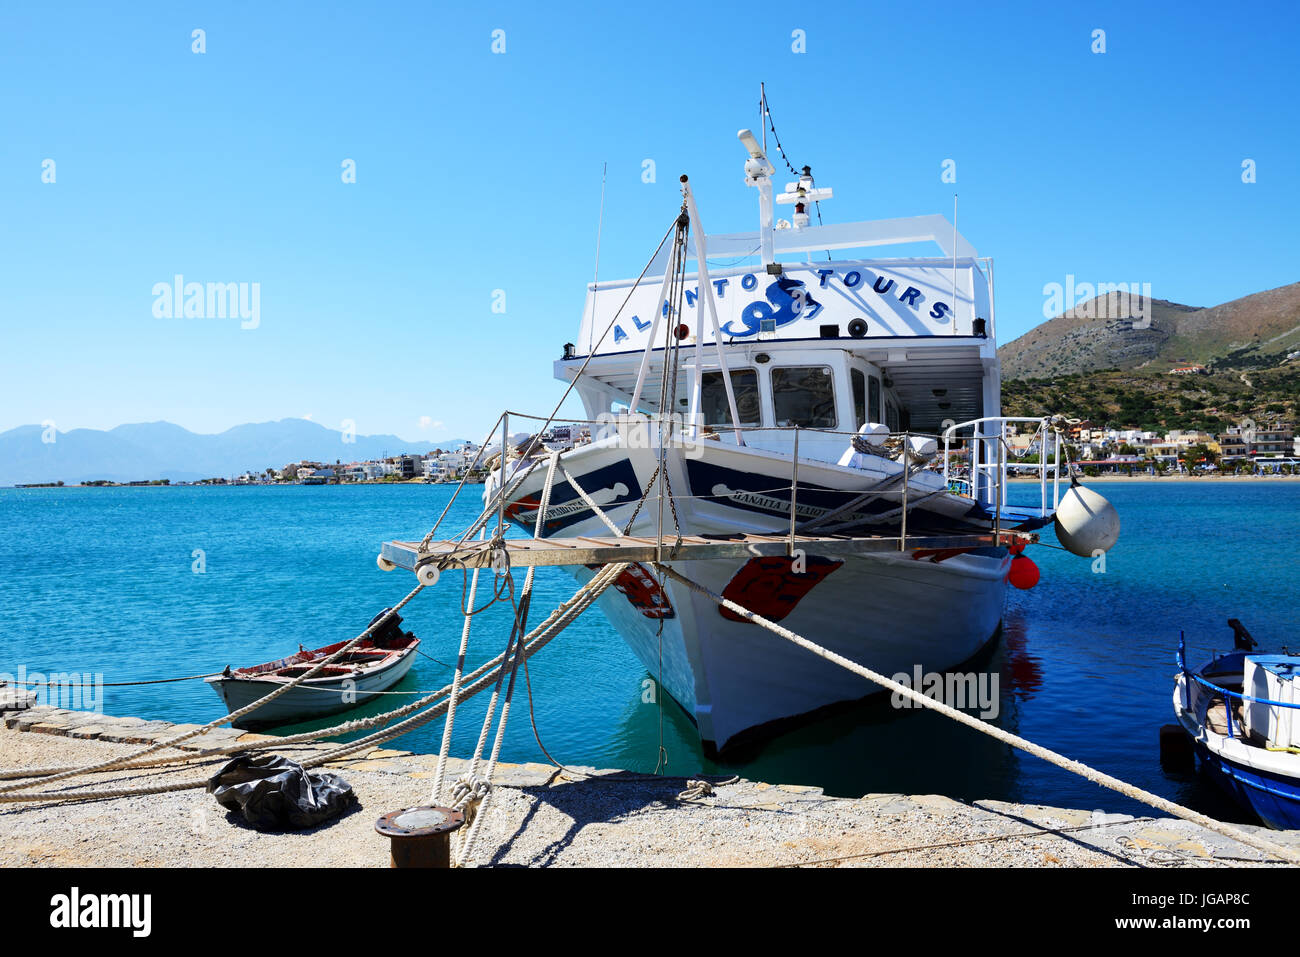 PLAKA, Griechenland - Mai 14: Die Motoryacht Tour nach Spinalonga Insel am 14. Mai 2014 in Plaka, Griechenland. Bis zu 16 Mio. Touristen werden erwartet, um Griechenland zu besuchen Stockfoto